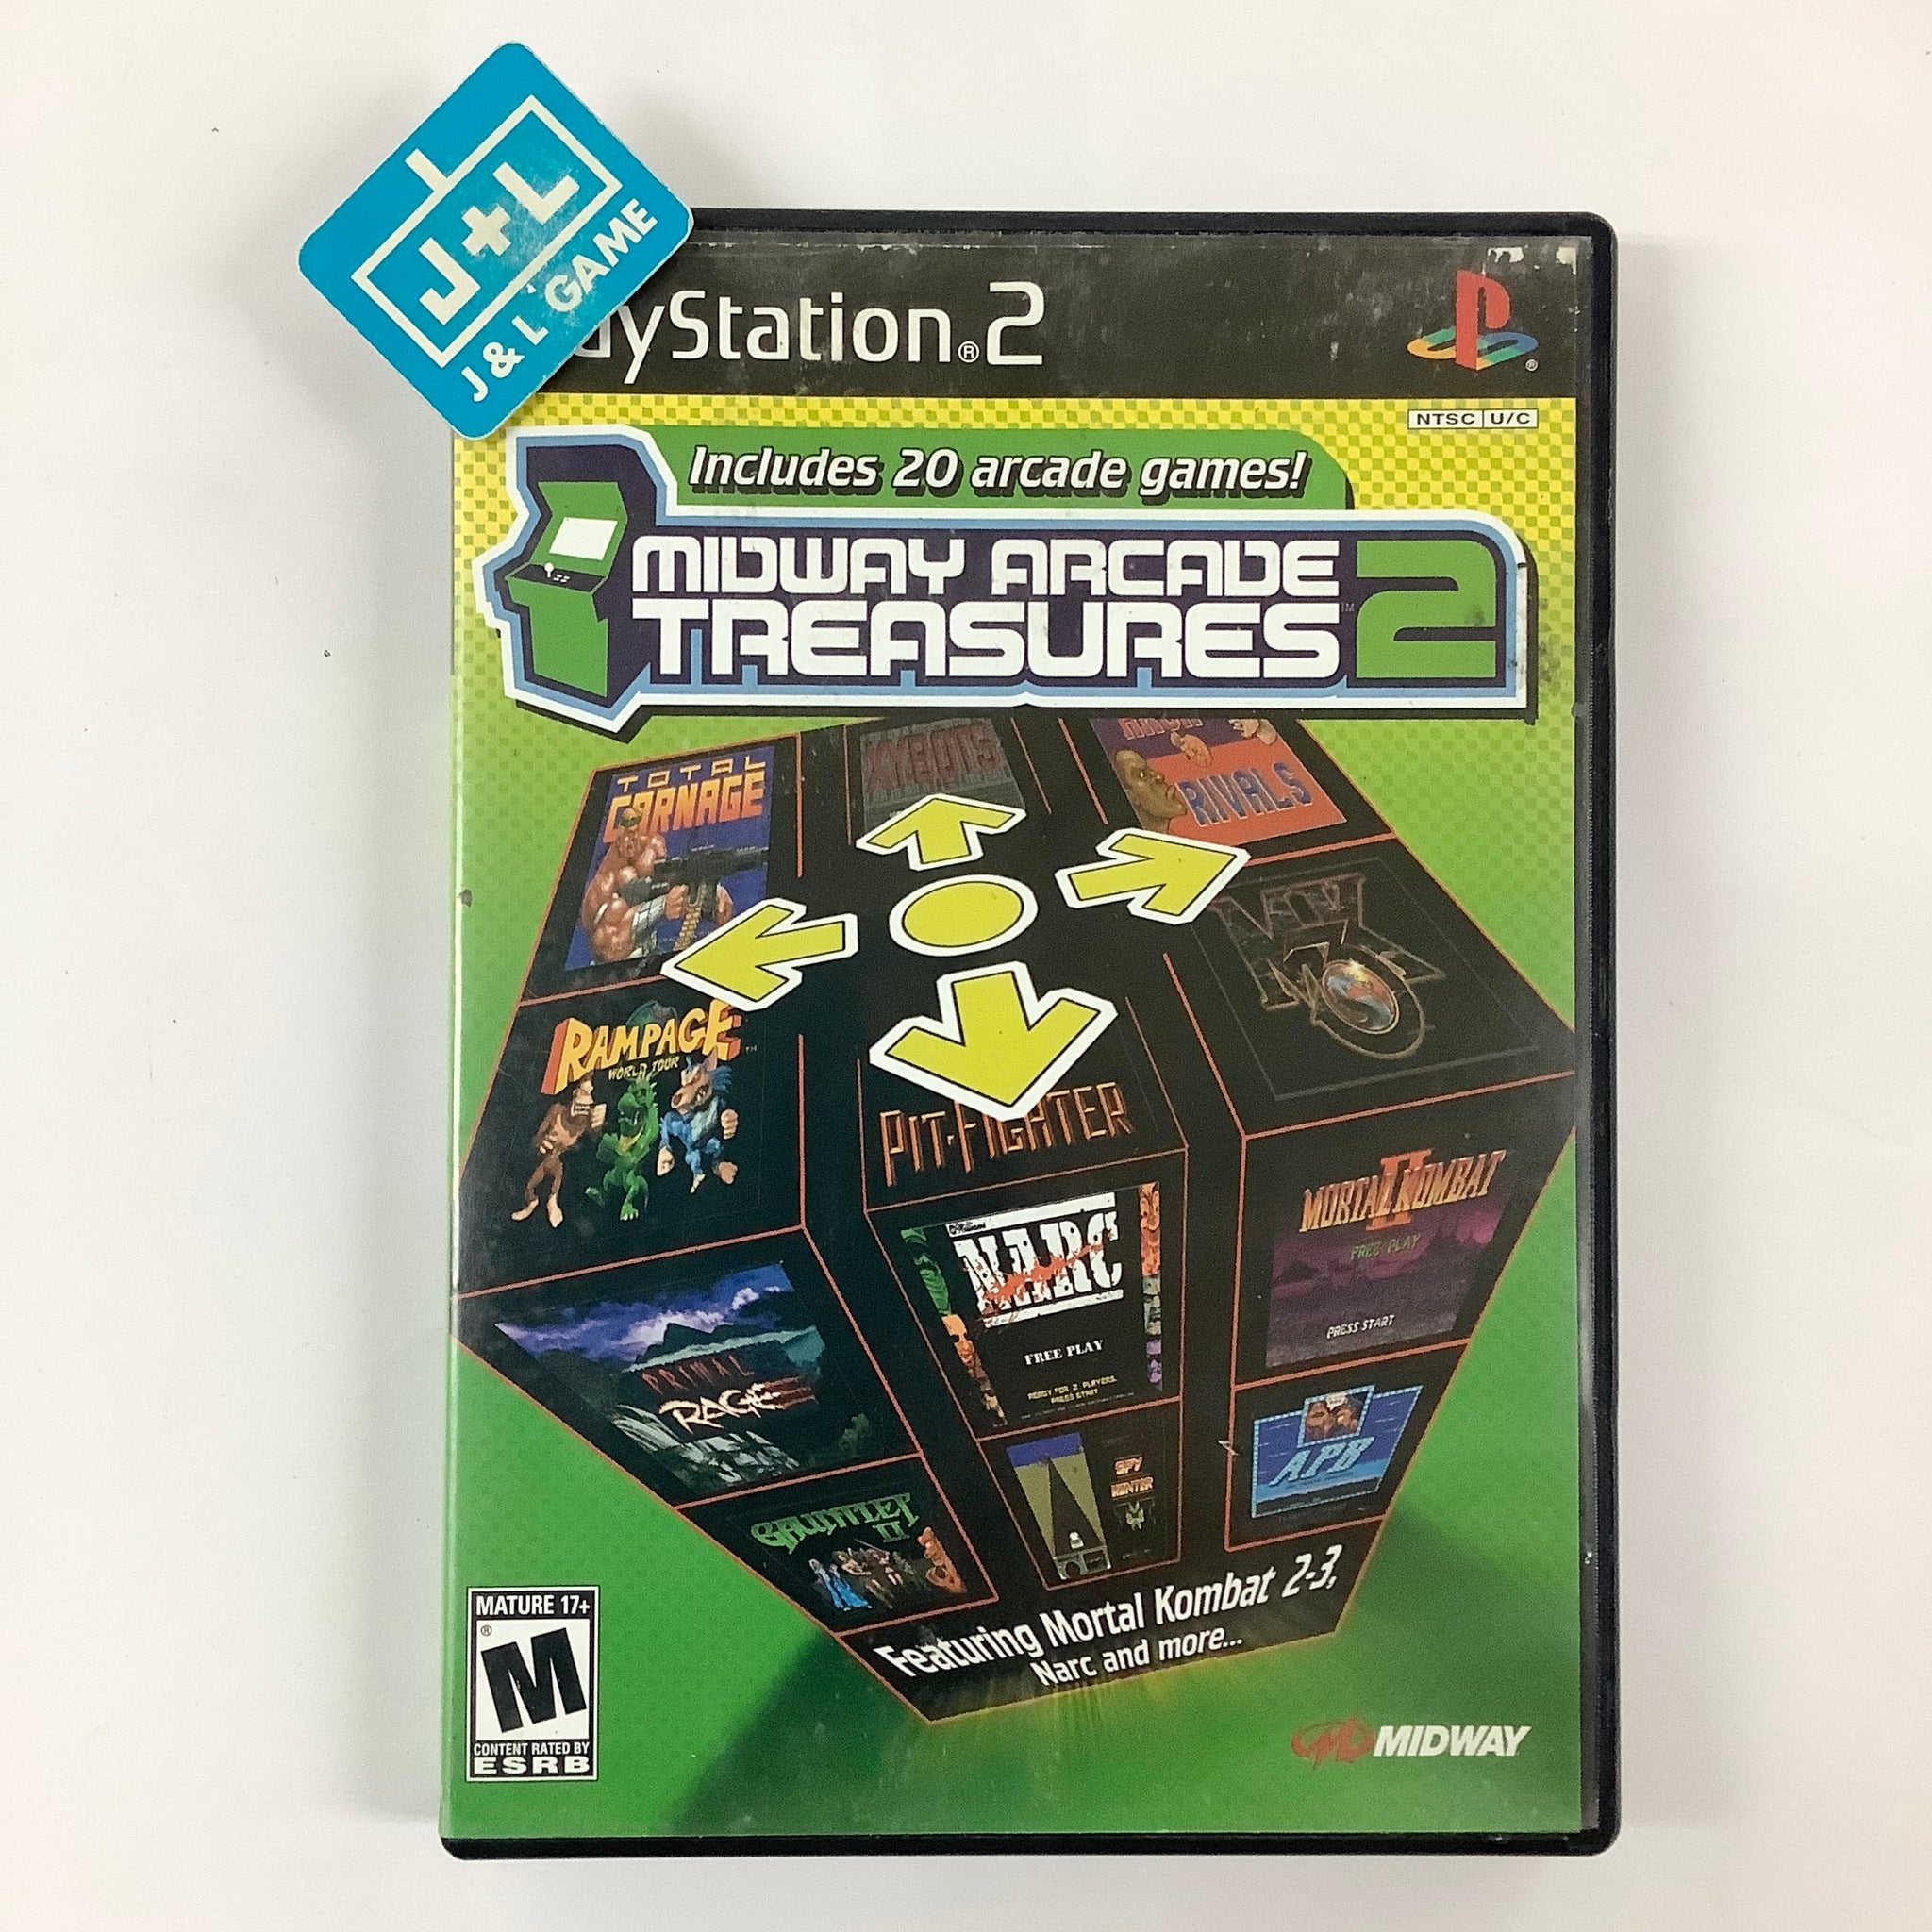 Midway Arcade Treasures 3 - PlayStation 2